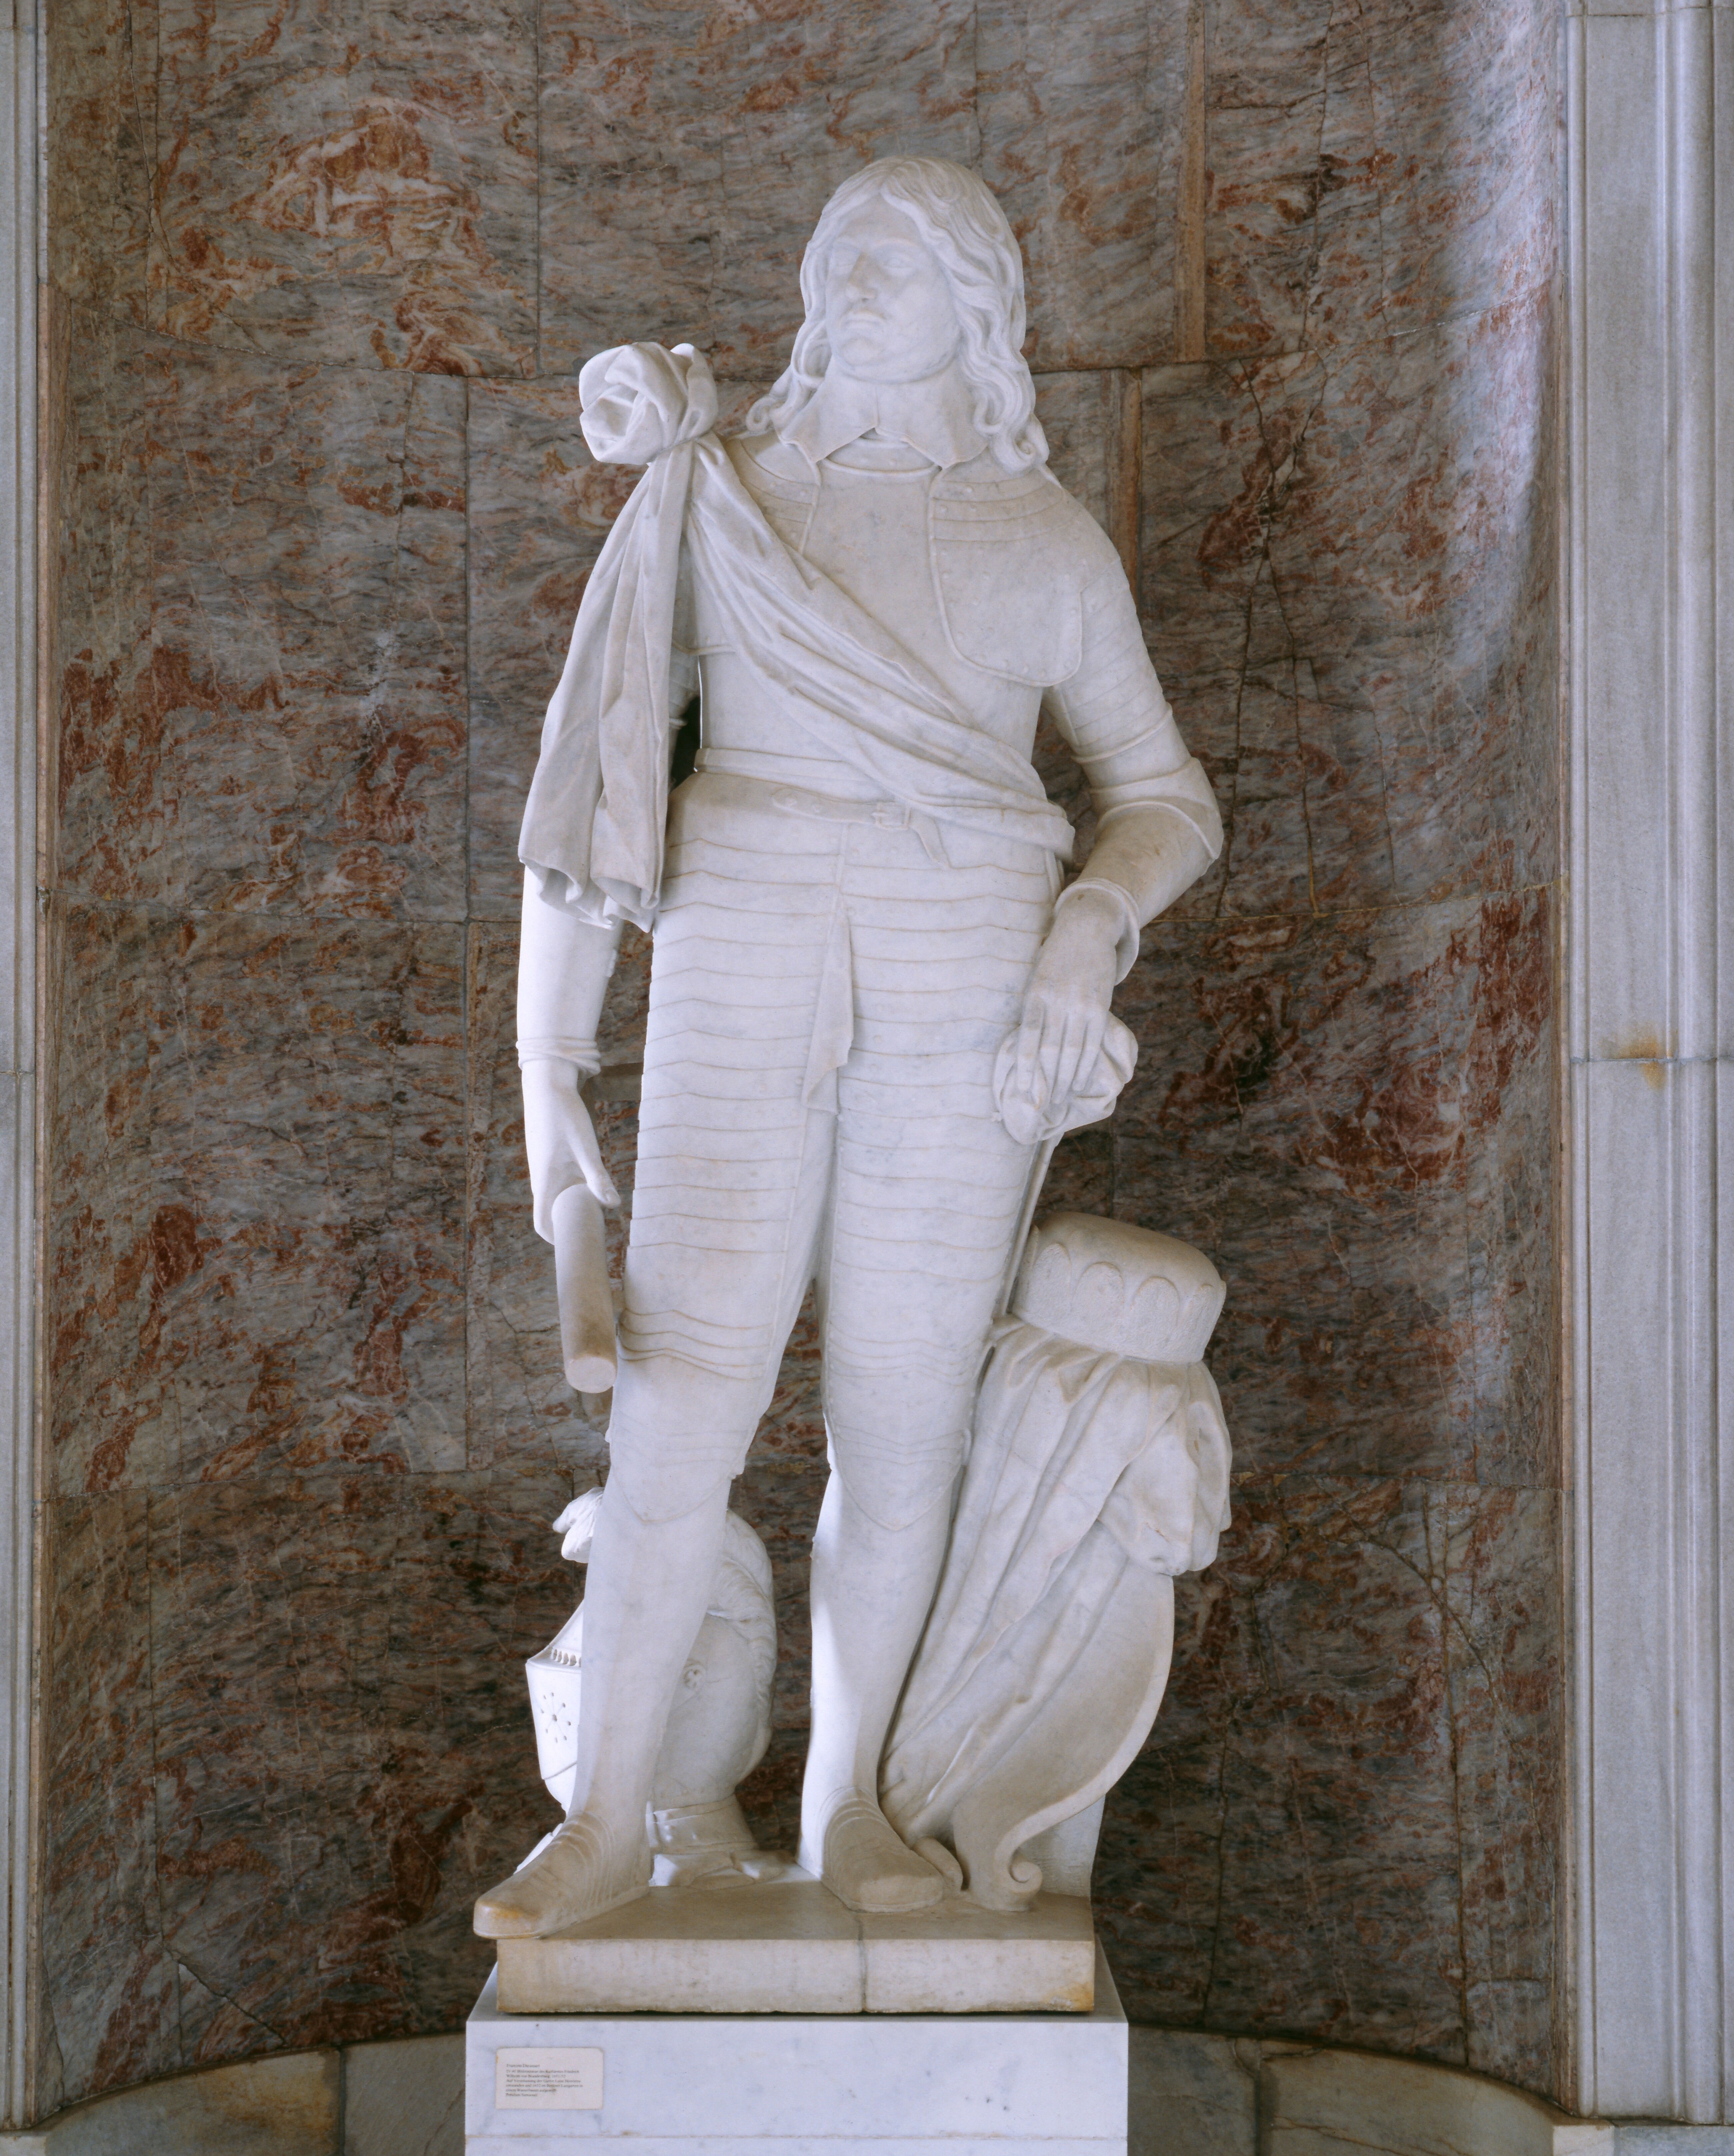 Dieussart (Dusart), Francois: Kurfürst Friedrich Wilhelm, 1651-1652, Skulpt.slg. 92. (Stiftung Preußische Schlösser und Gärten Berlin-Brandenburg CC BY-NC-SA)